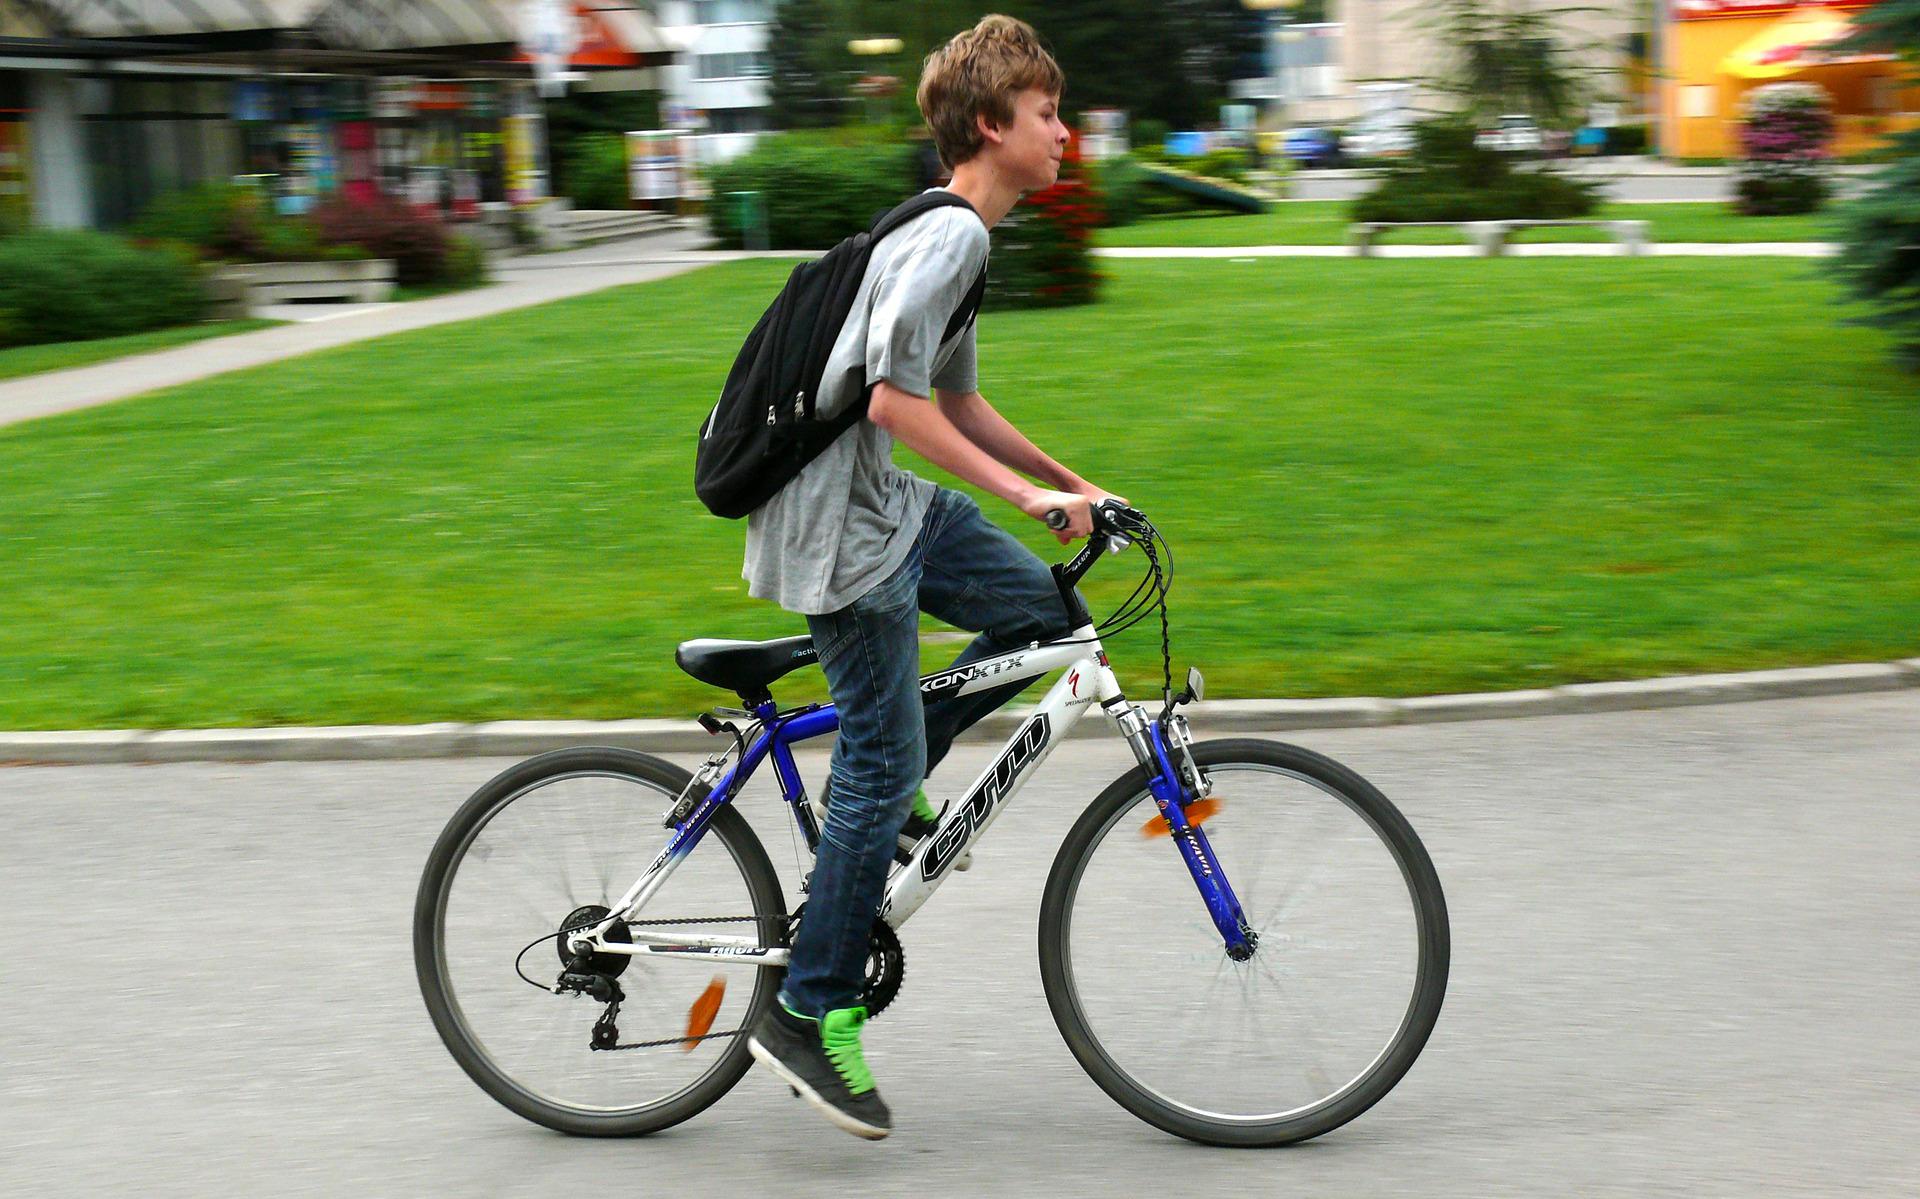 Voor kinderen tussen 8 en 18 jaar kan er één keer per drie jaar een vergoeding worden aangevraagd voor de aanschaf van een tweedehands fiets.